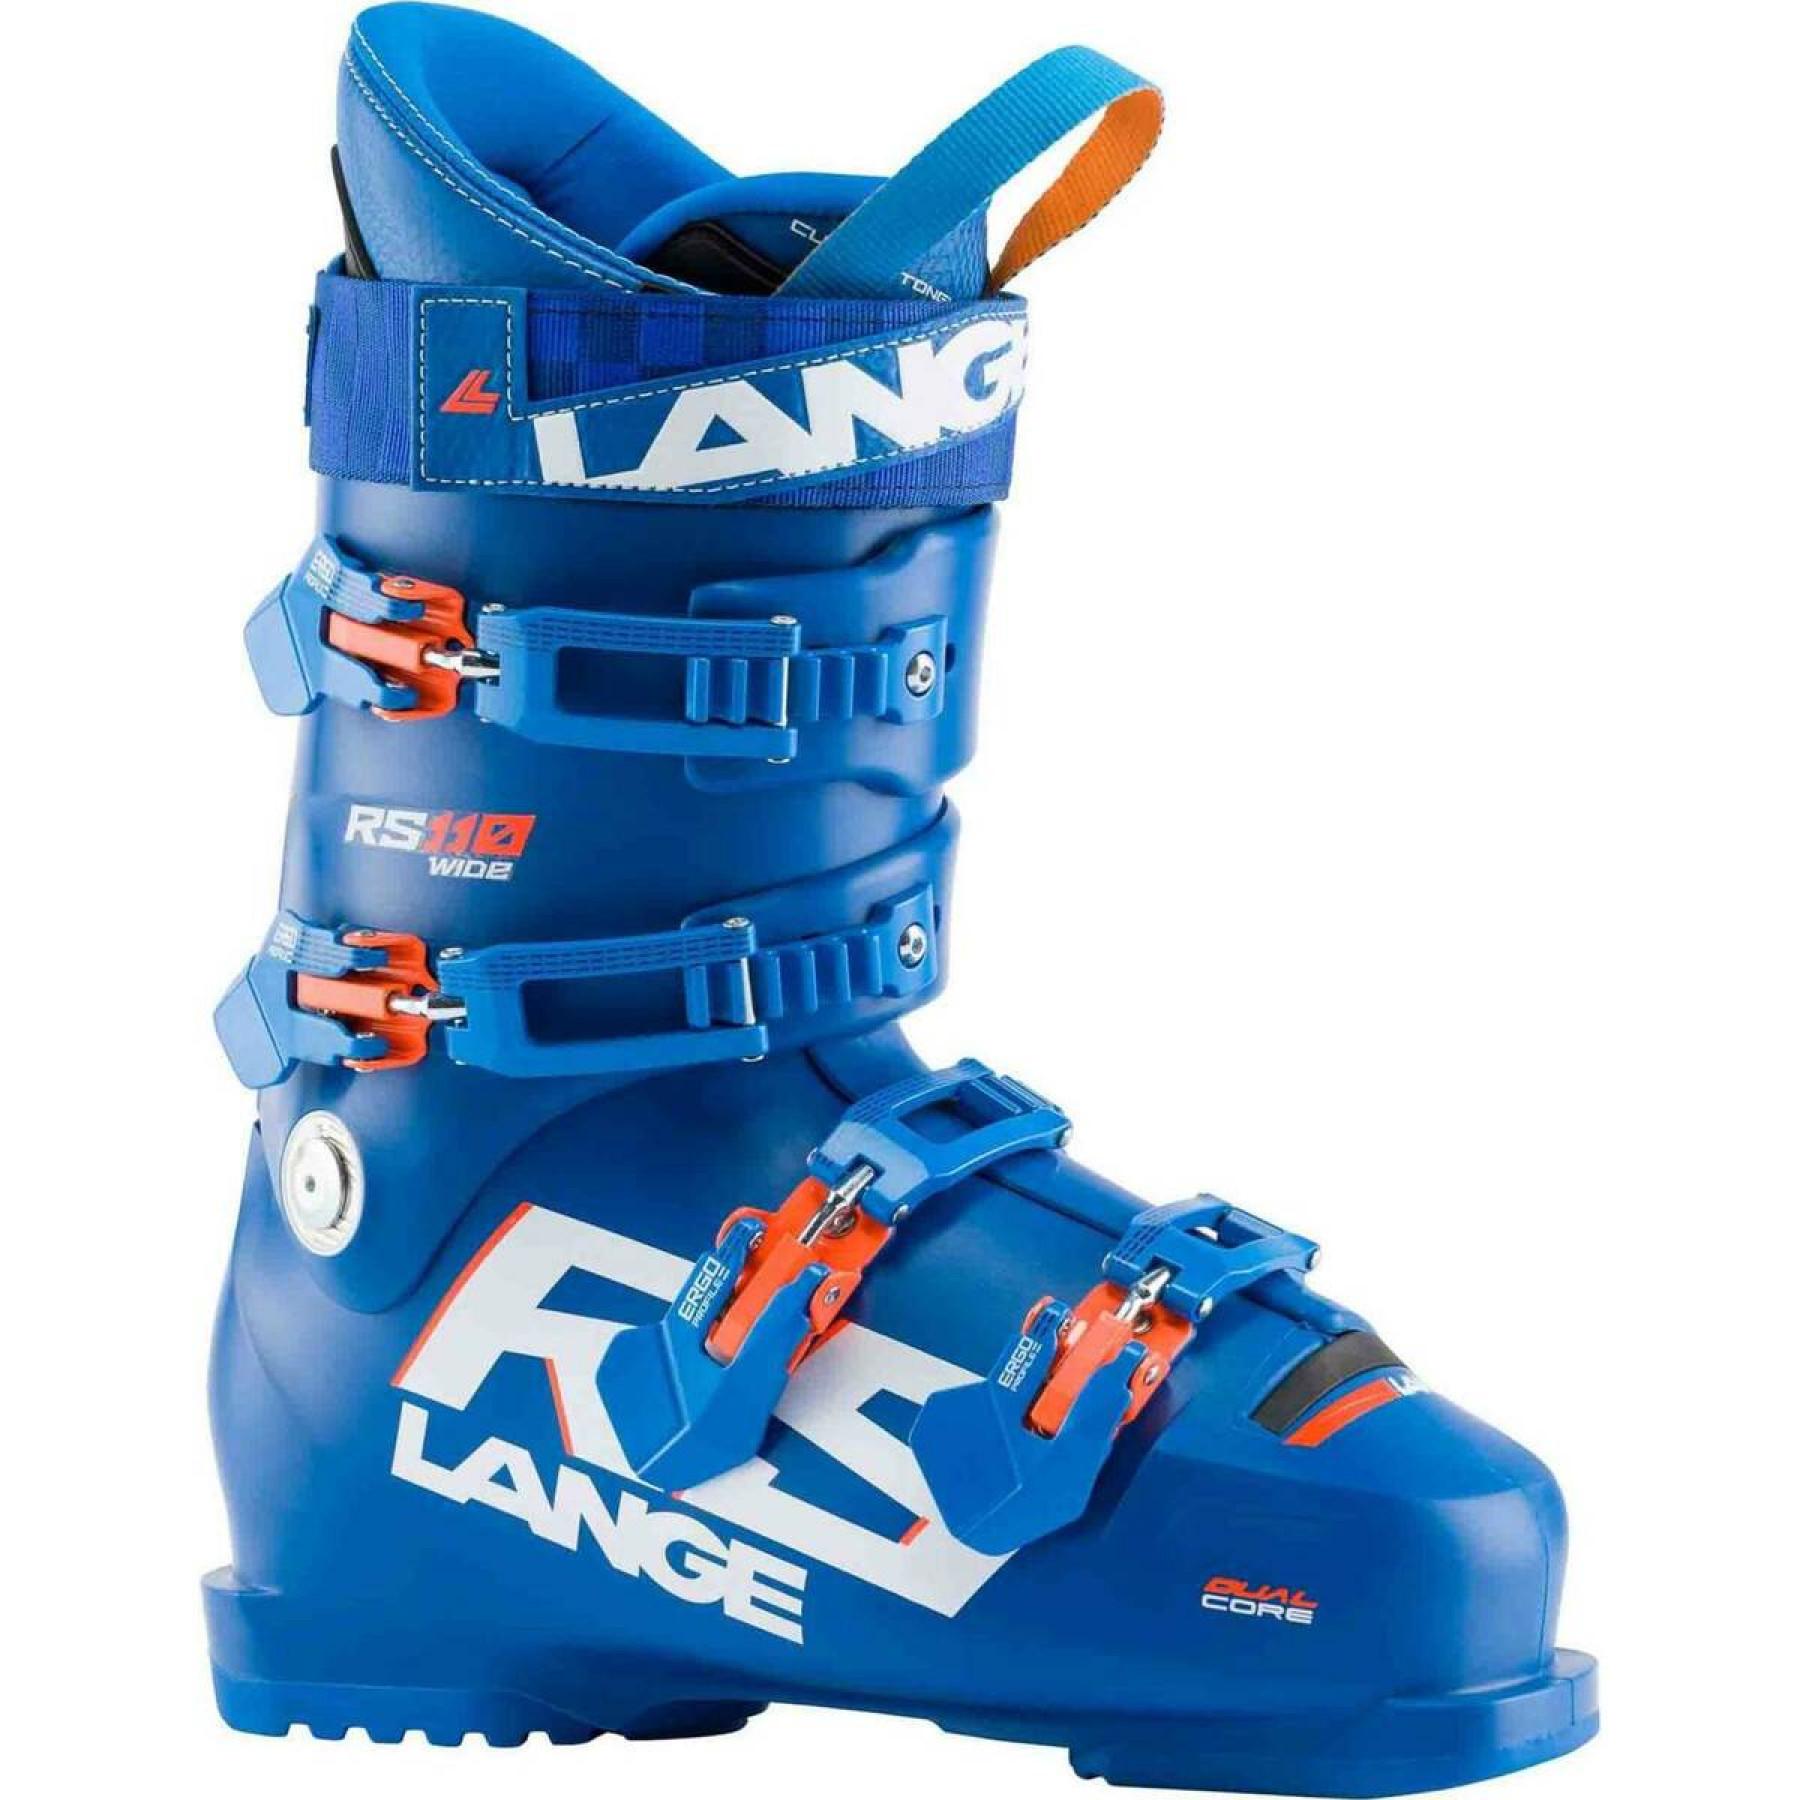 Ski boots Lange rs 110 wide